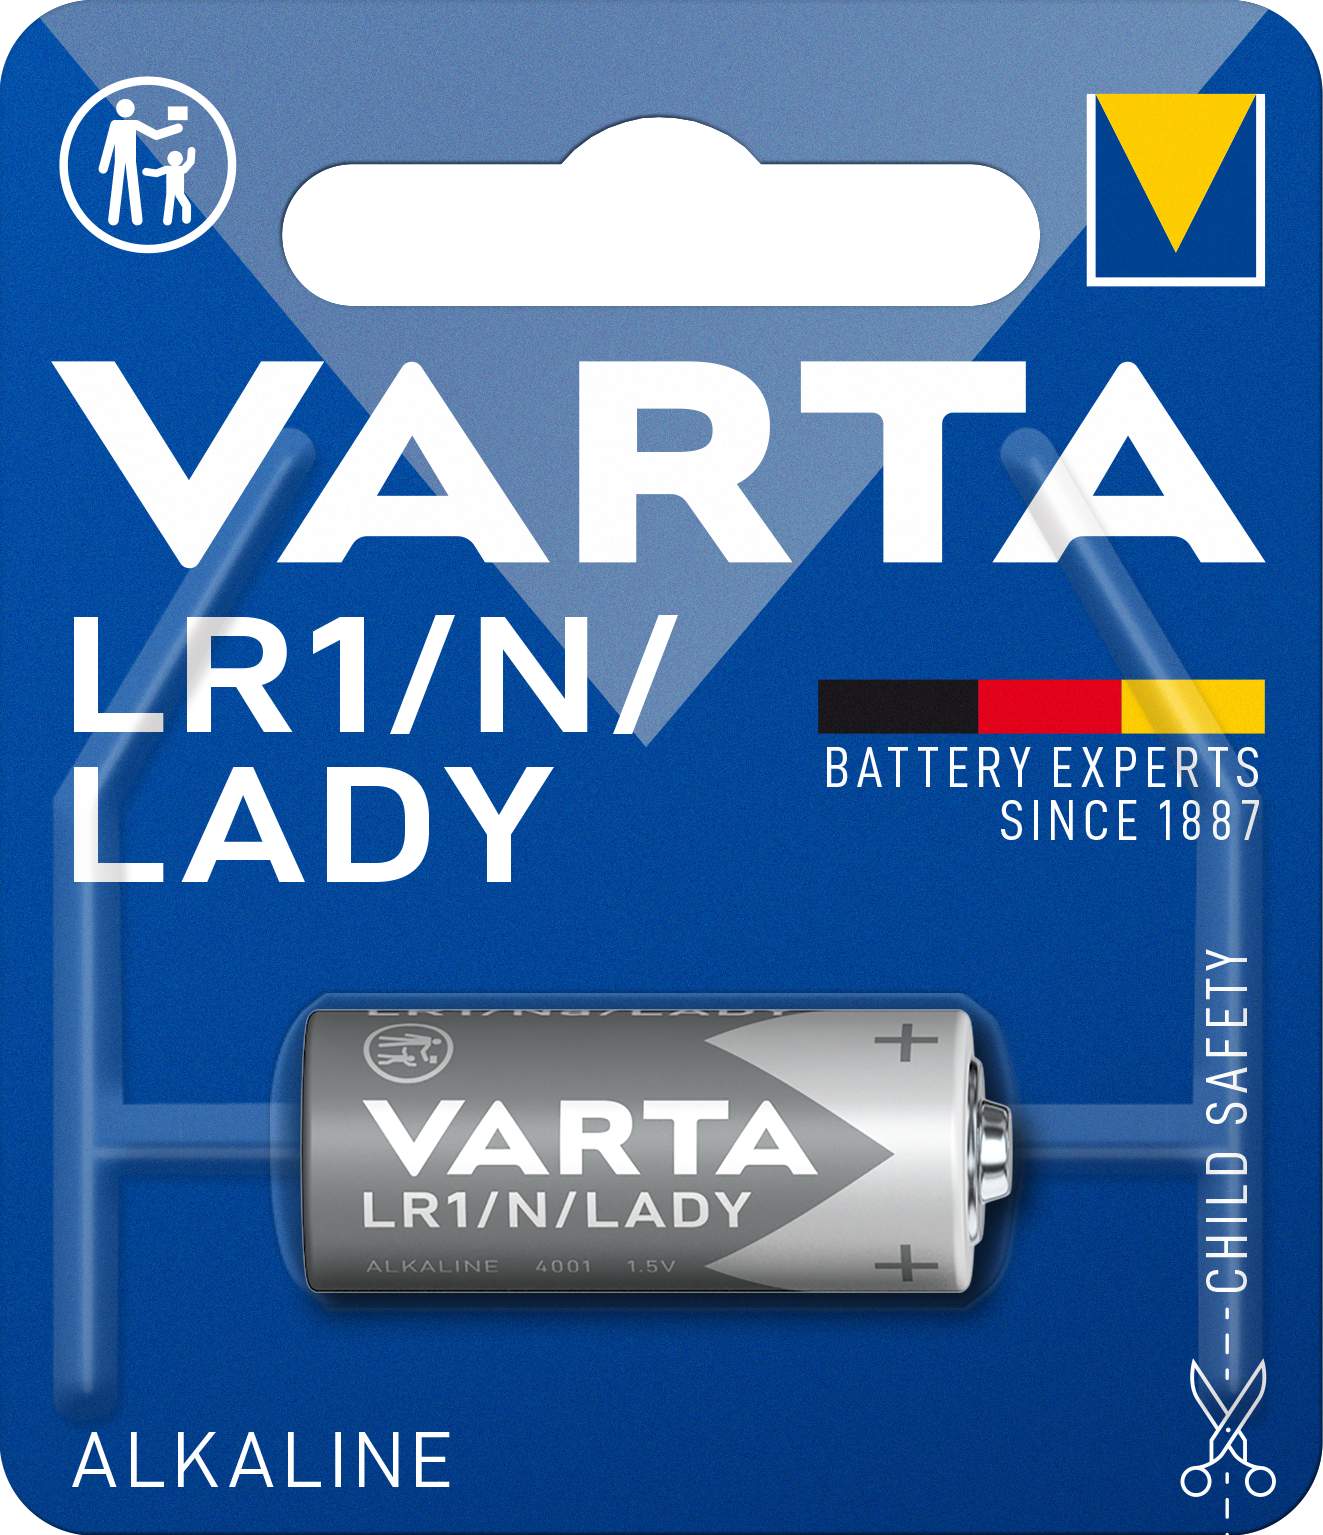 VARTA SPE LR1 / N / LADY PAR 1